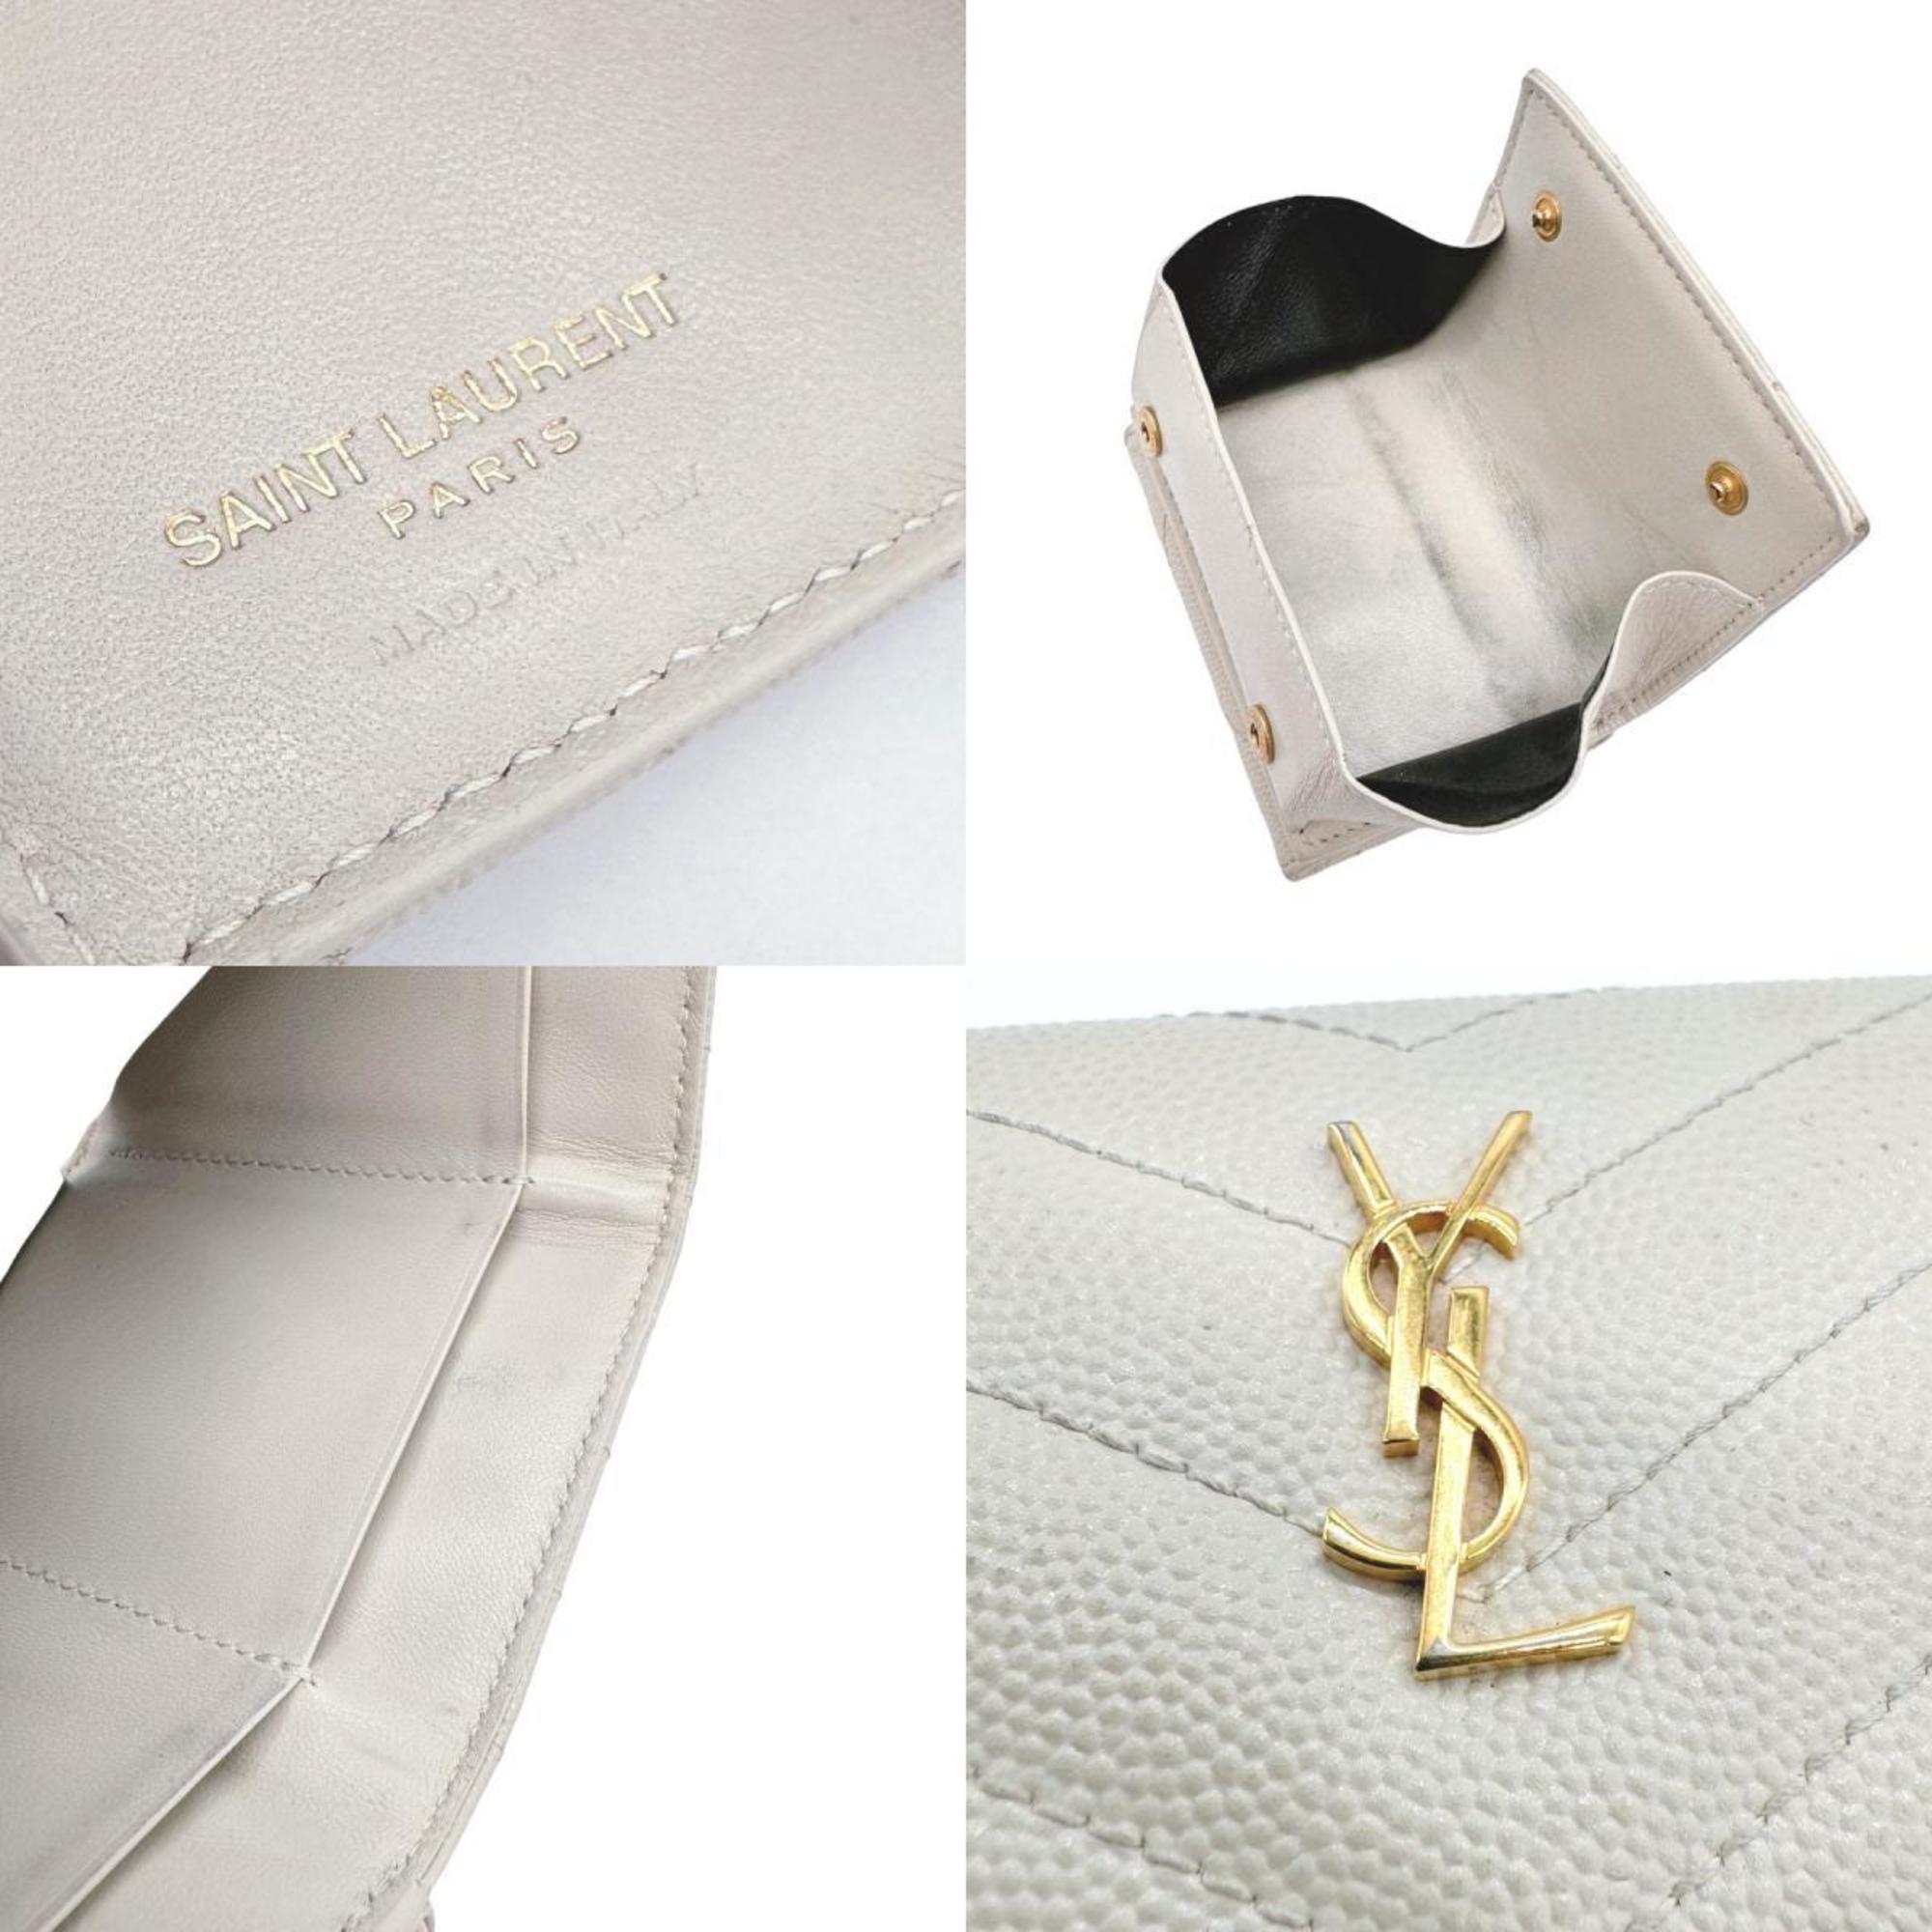 Saint Laurent SAINT LAURENT Trifold Wallet Compact Leather Ivory Gold Ladies